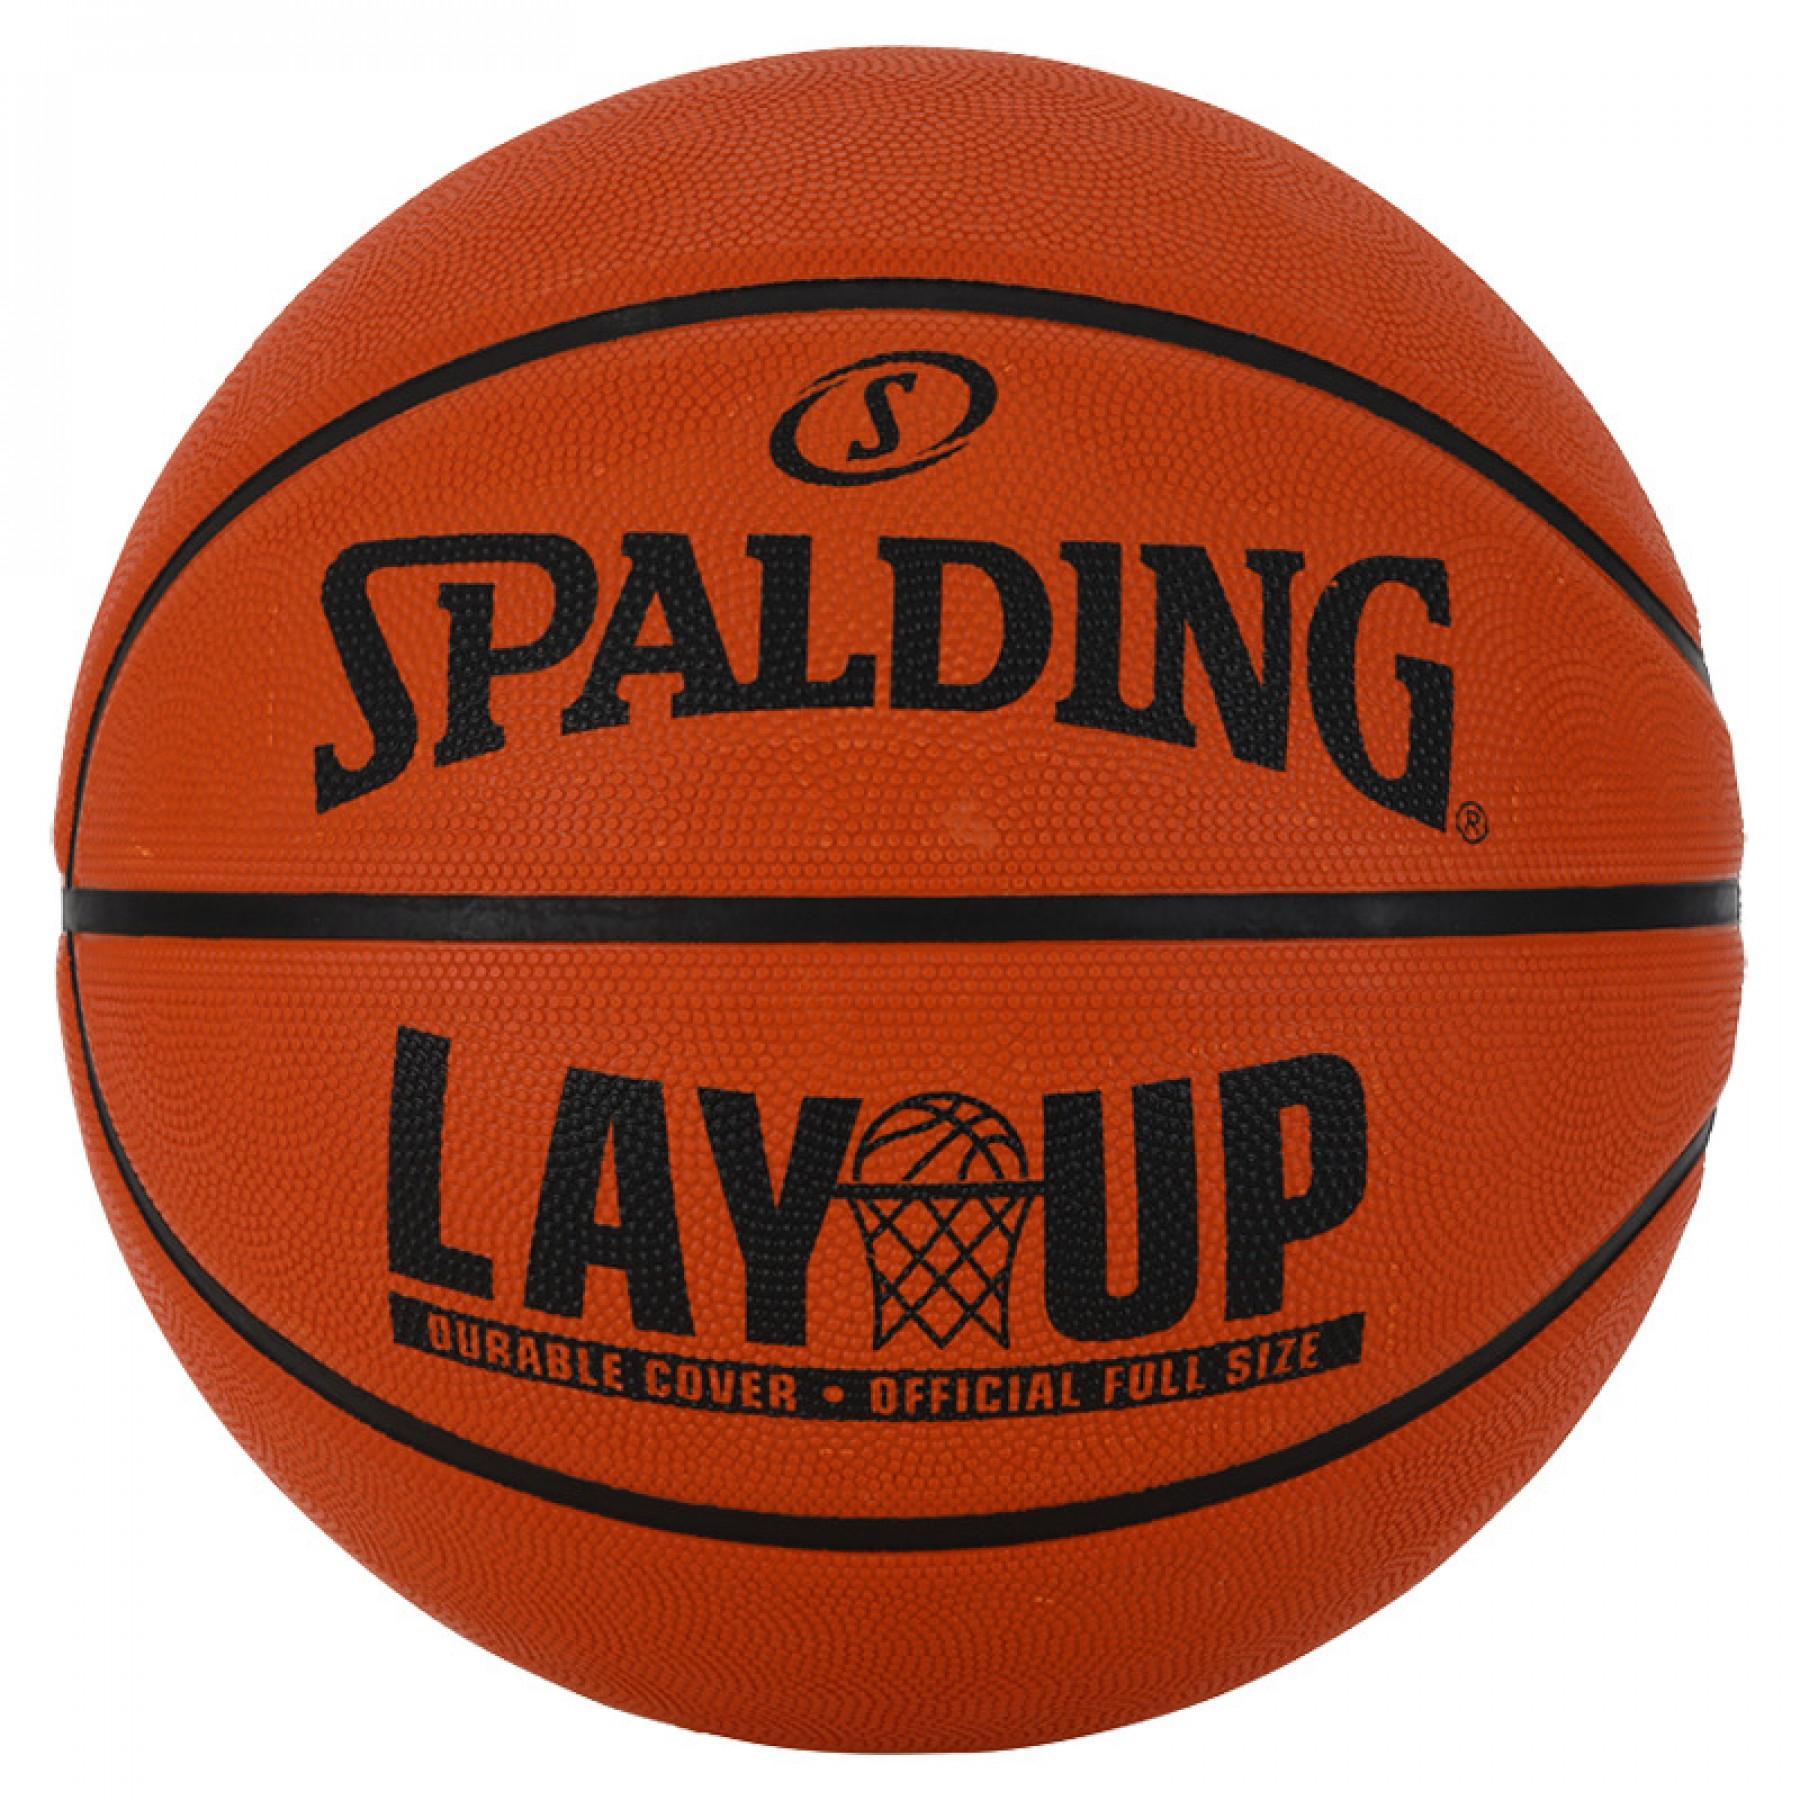 Ballon Spalding Layup (63-727z)